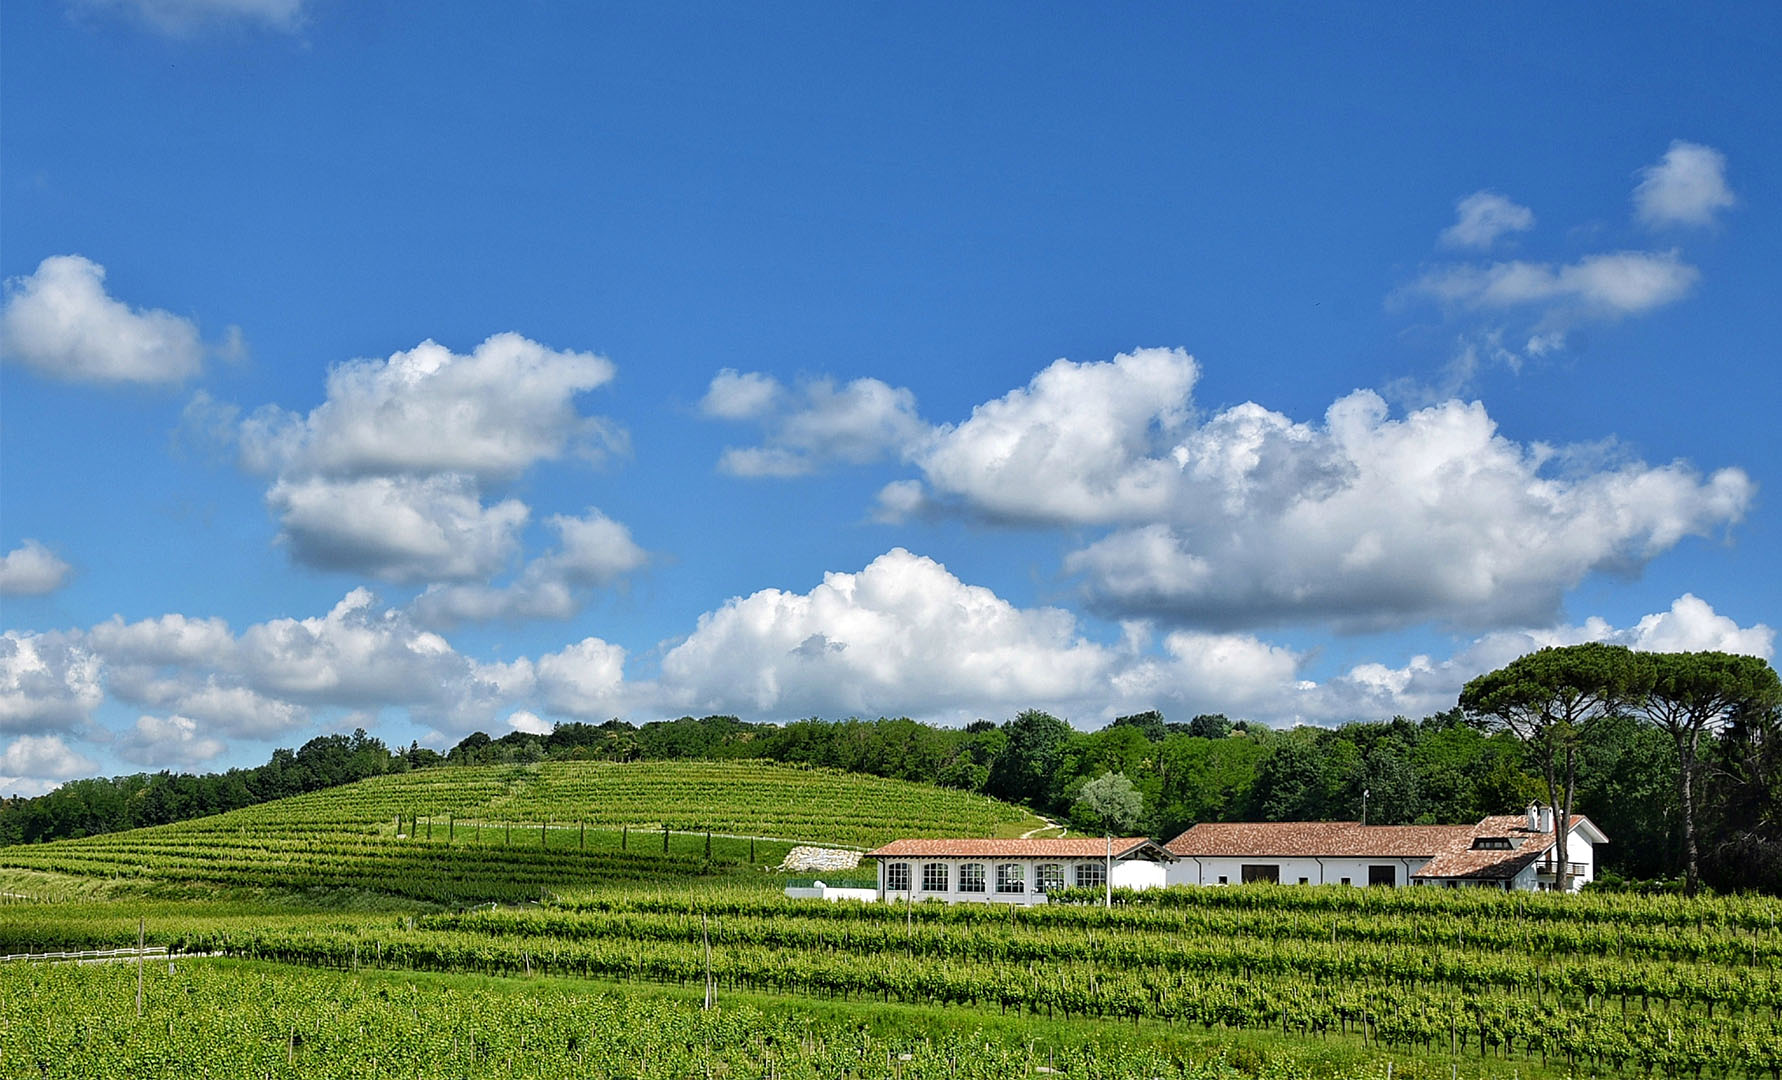 I Colli Orientali del Friuli scrigno di preziosi vini e paesaggi suggestivi